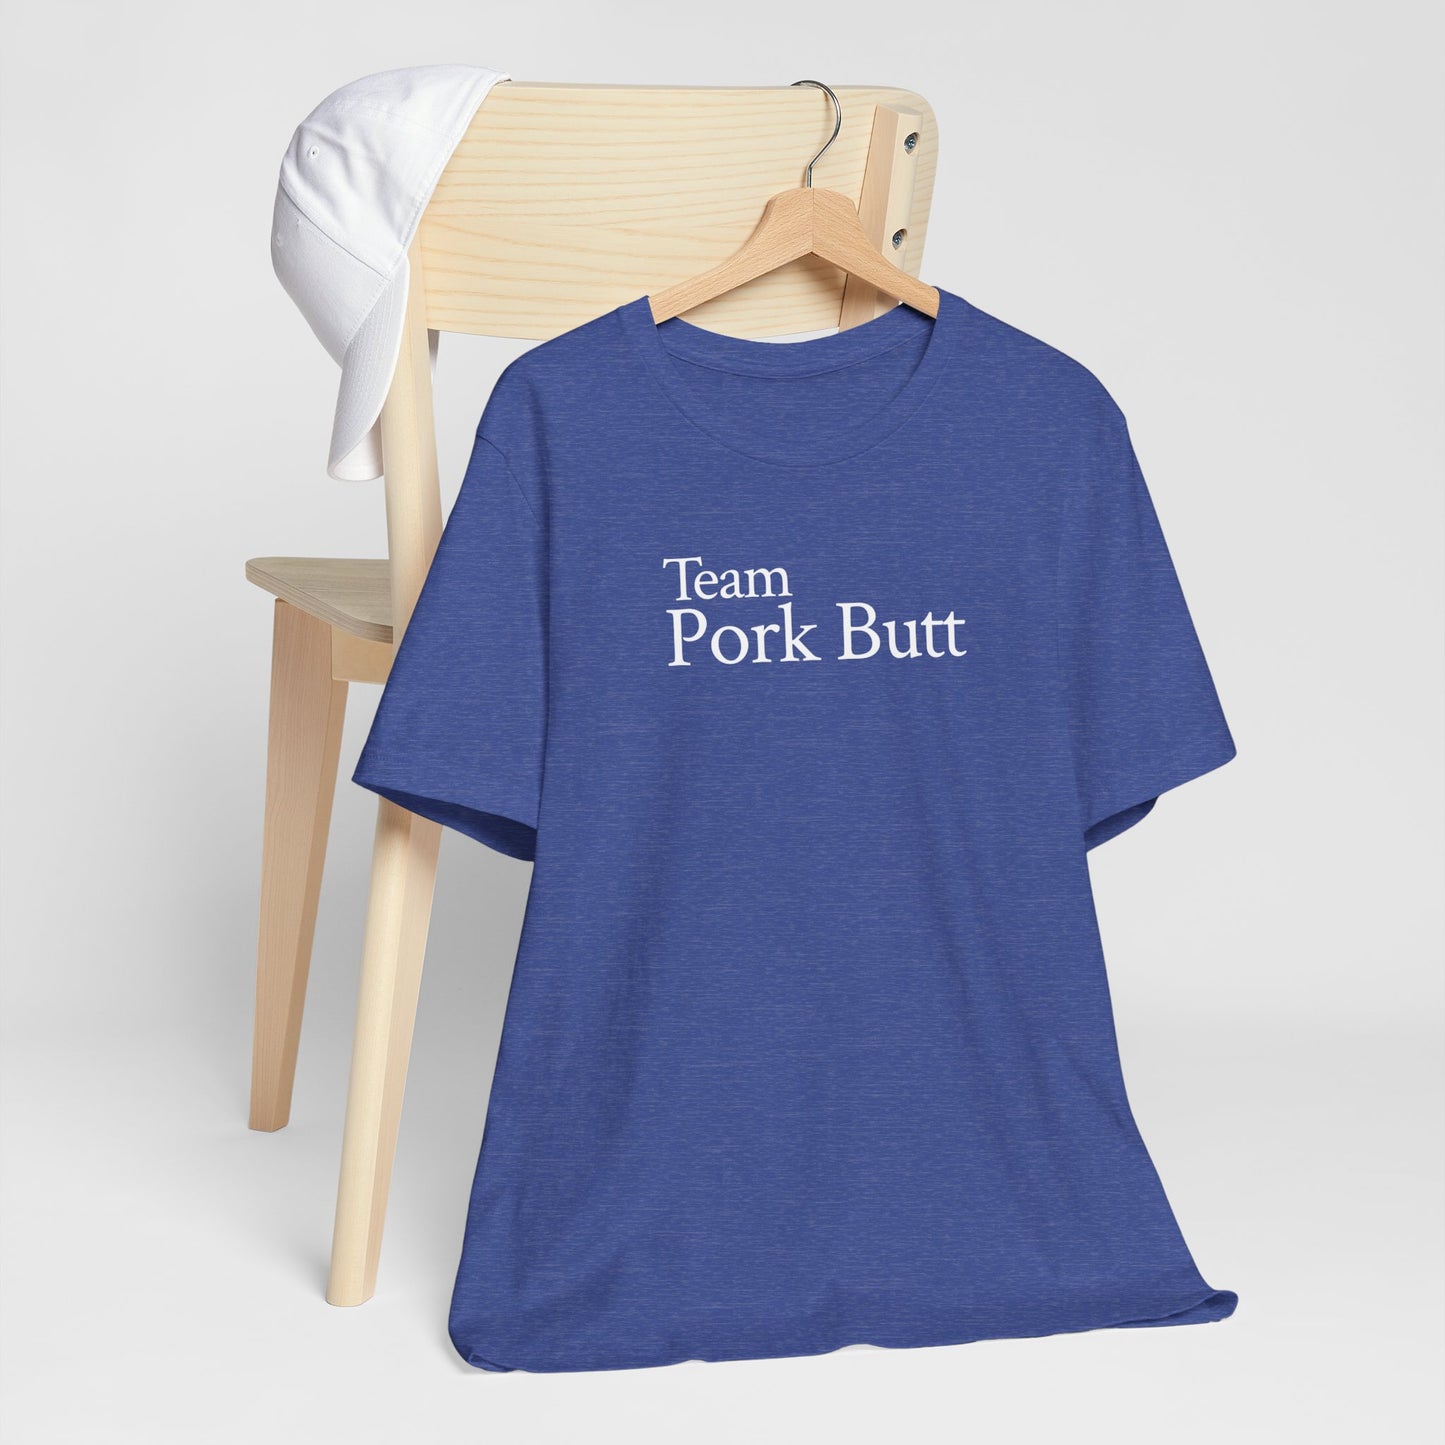 Team Pork Butt